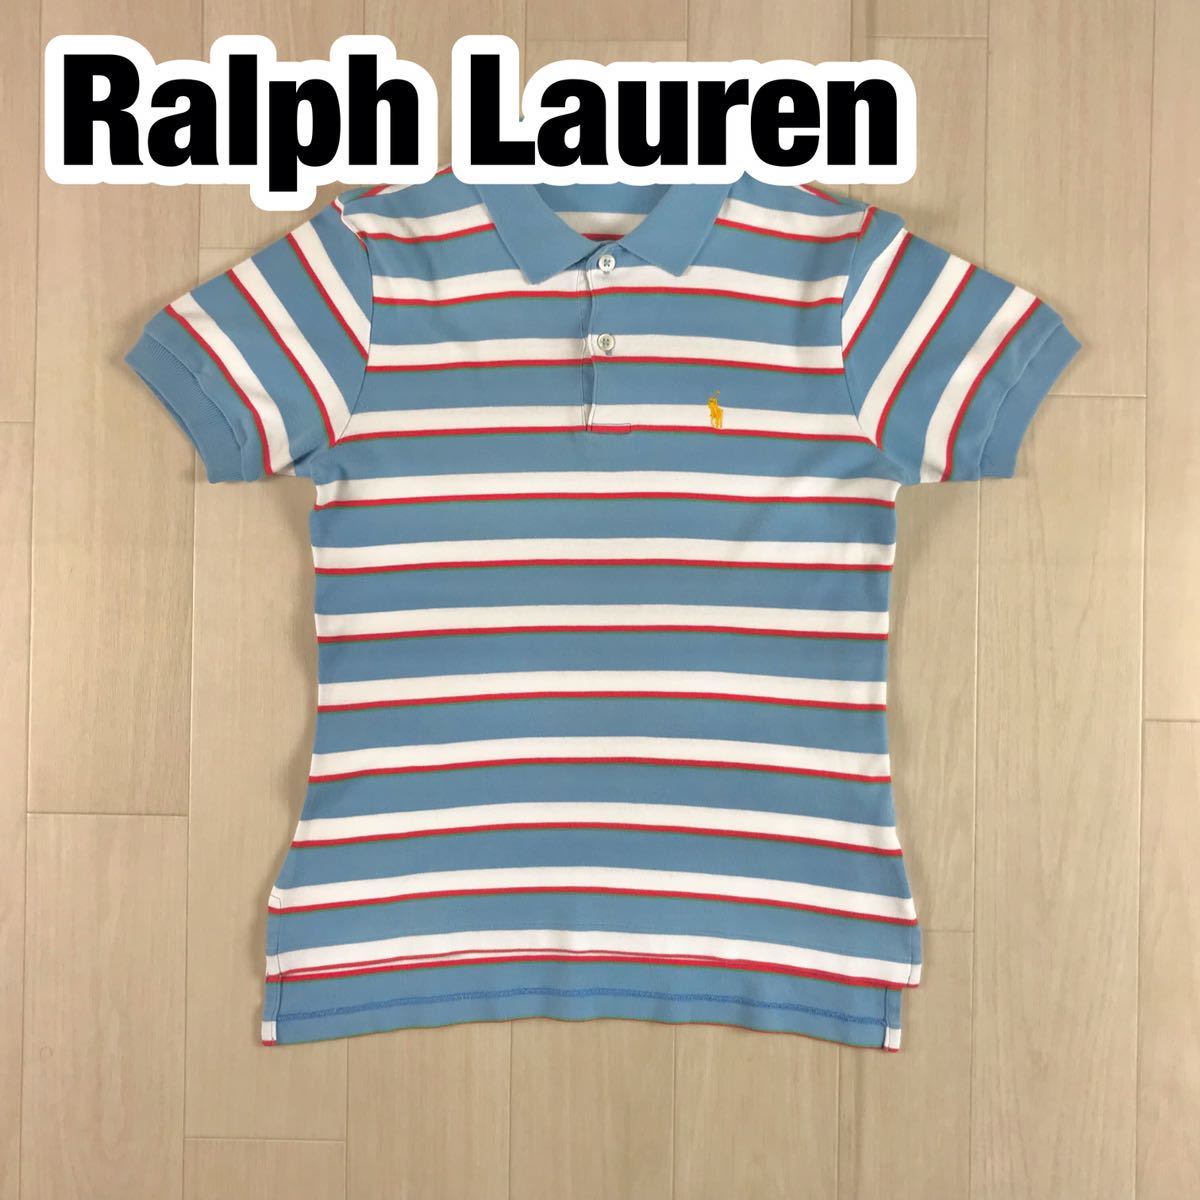 RALPH LAUREN ラルフローレン 半袖ポロシャツ キッズサイズ M ライトブルー ホワイト ボーダー 刺繍ポニー 東京スタイル